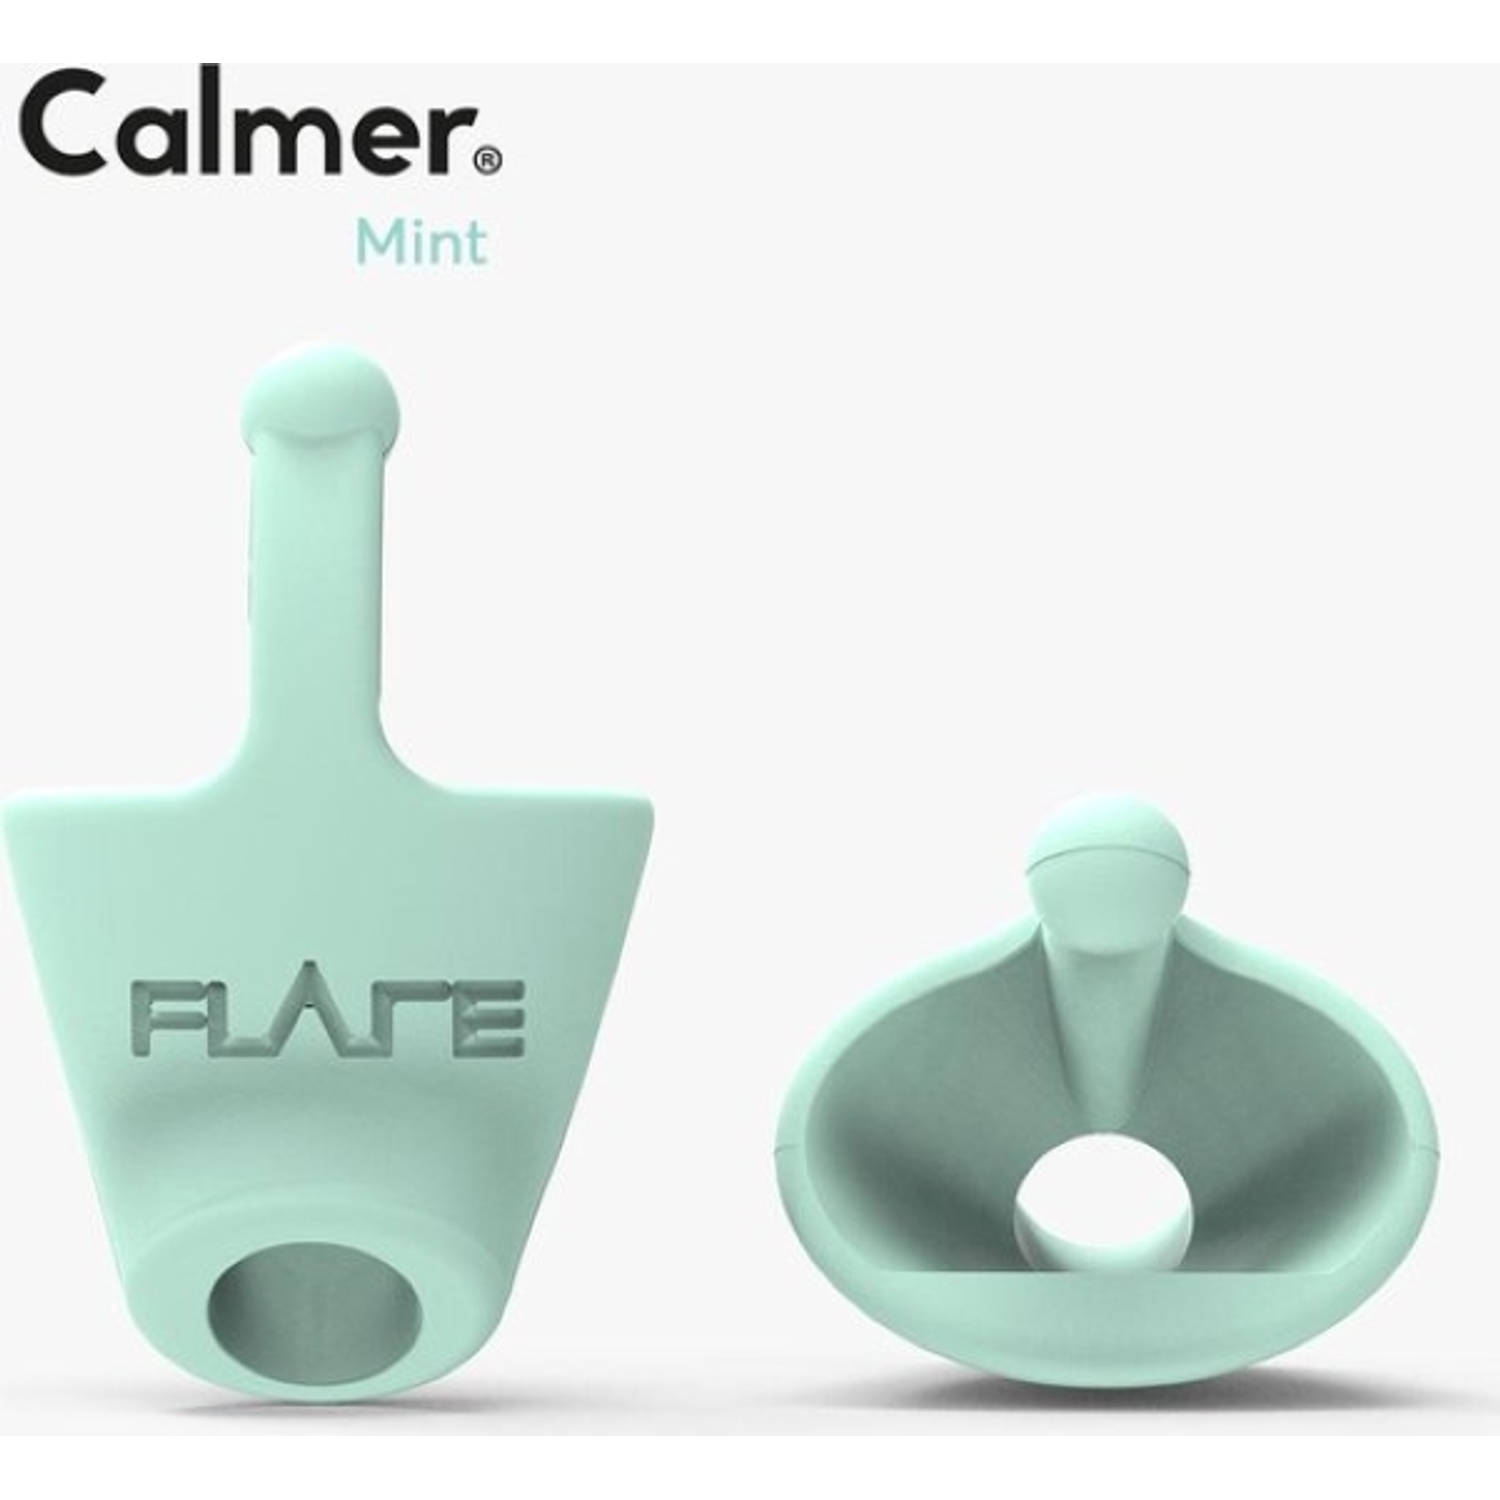 CALMER Mint Een klein oordopje dat stress vermindert verhoogt geluidskwaliteit Flare Audio